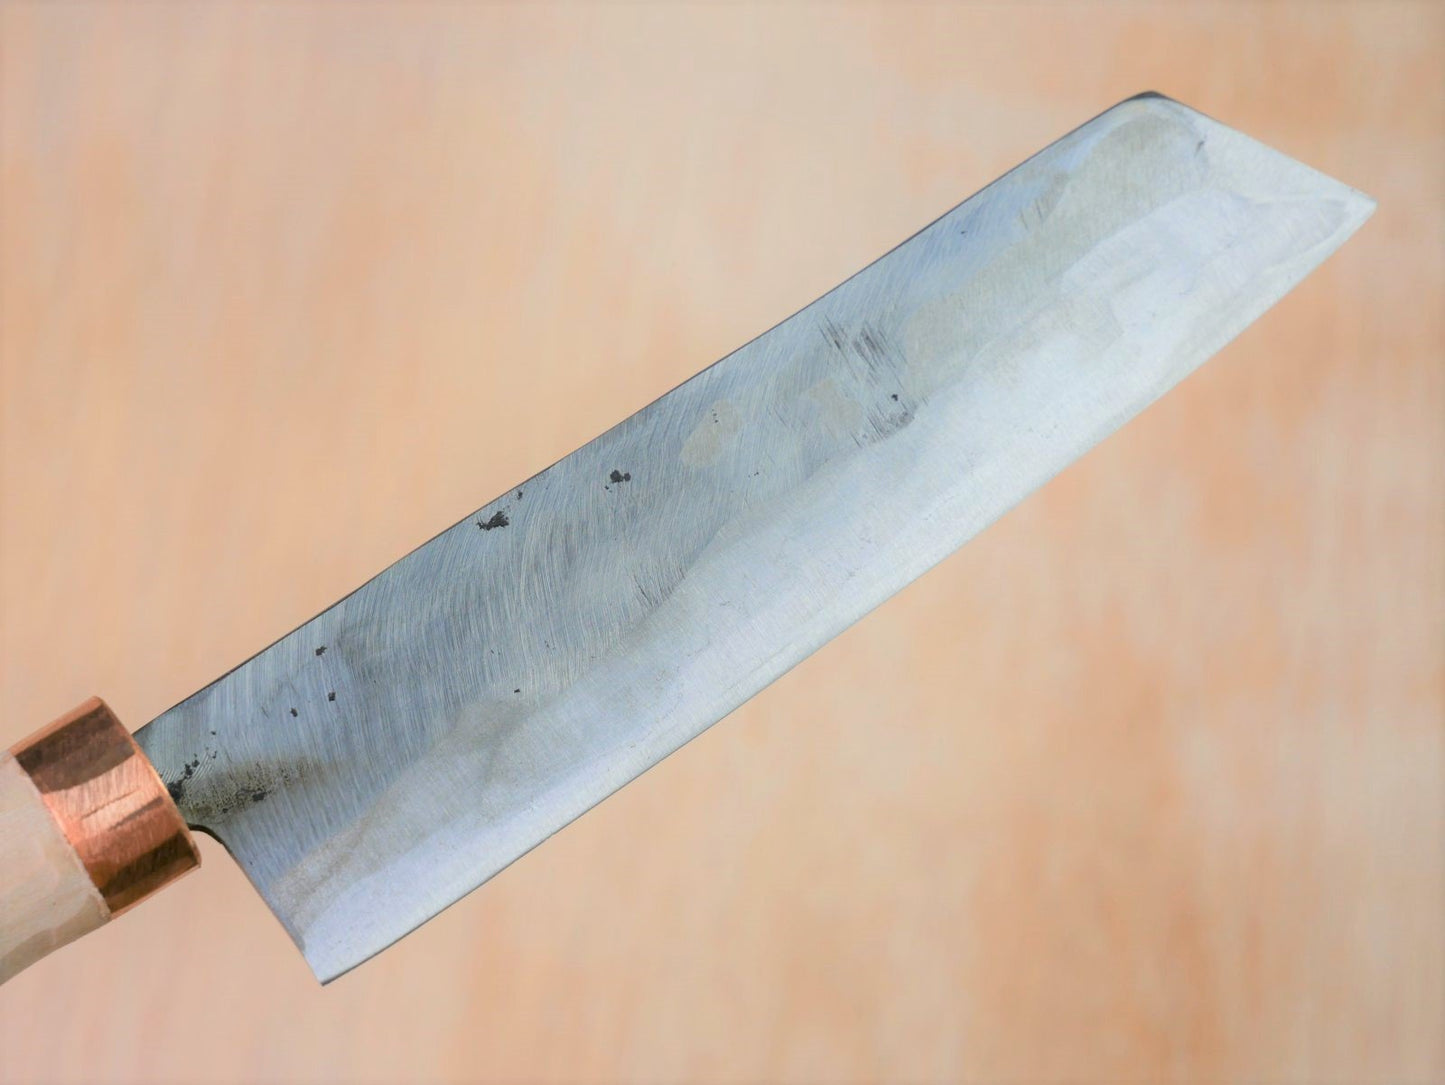 Blade of Shirogami No.3 Nakiri made by Tsutomu Takahashi